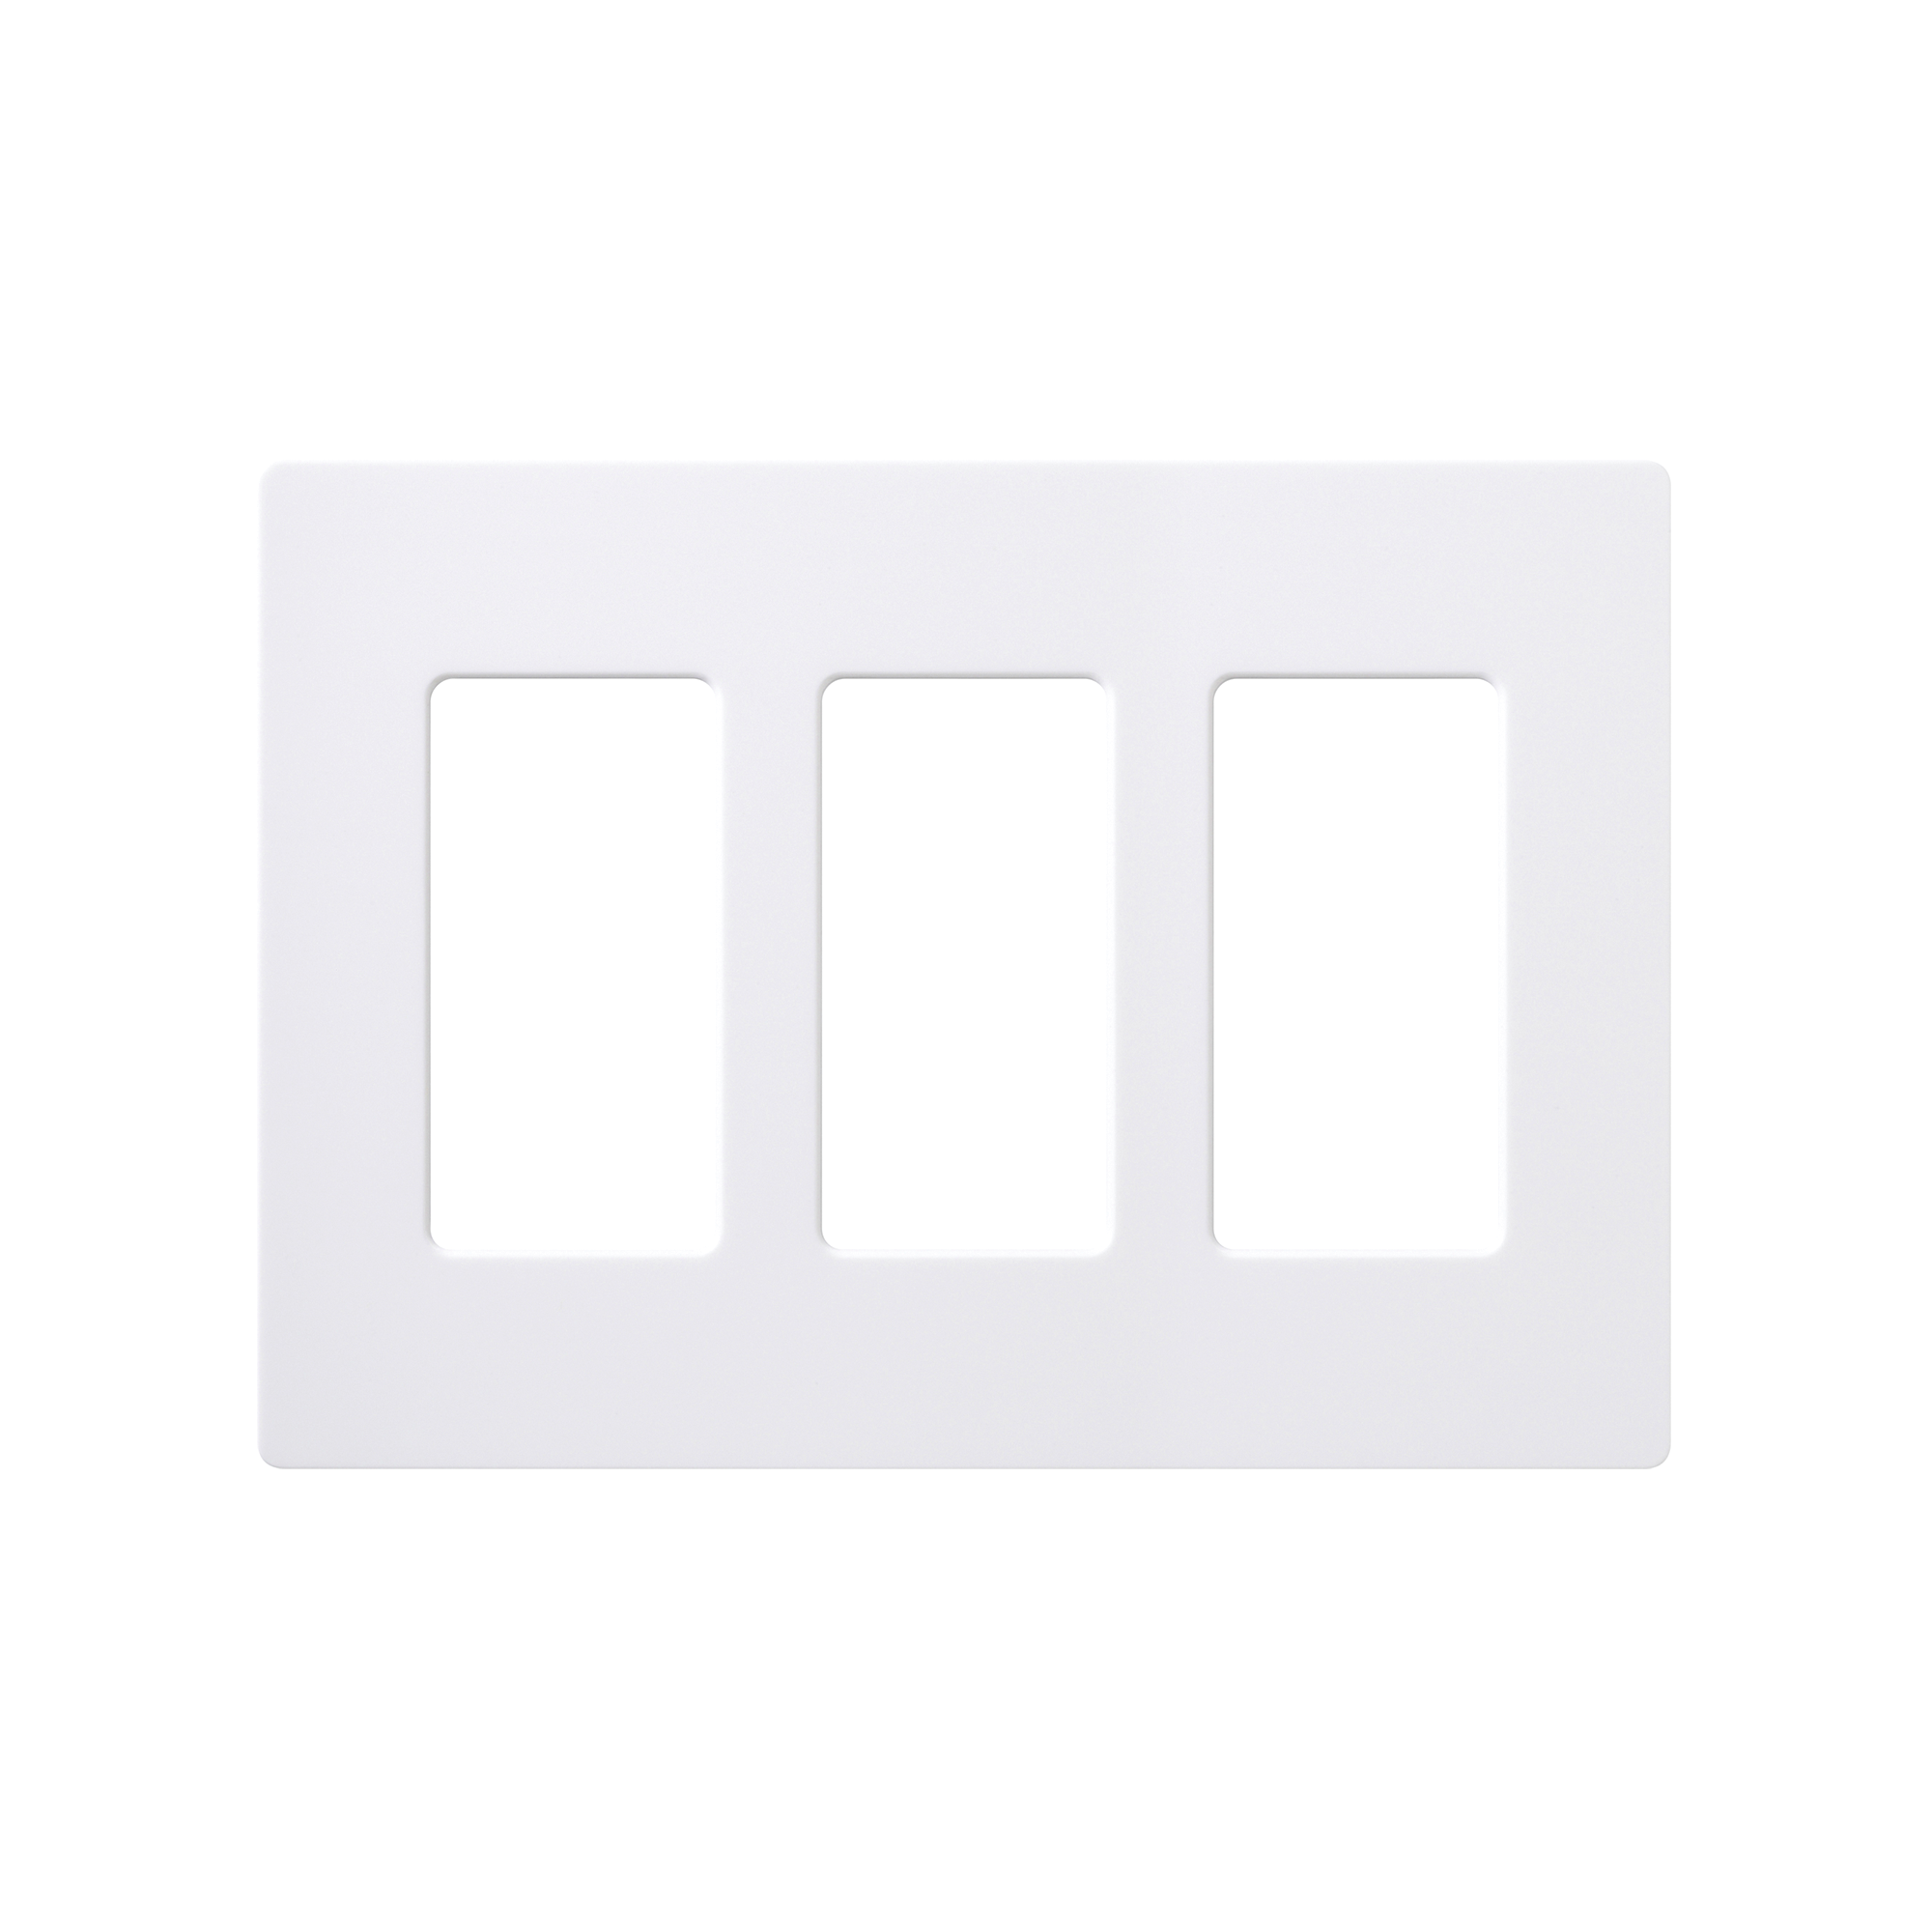 Placa de pared 3 espacios, color blanco, para atenuador (dimmer), switch ó control remoto PICO inalámbrico.